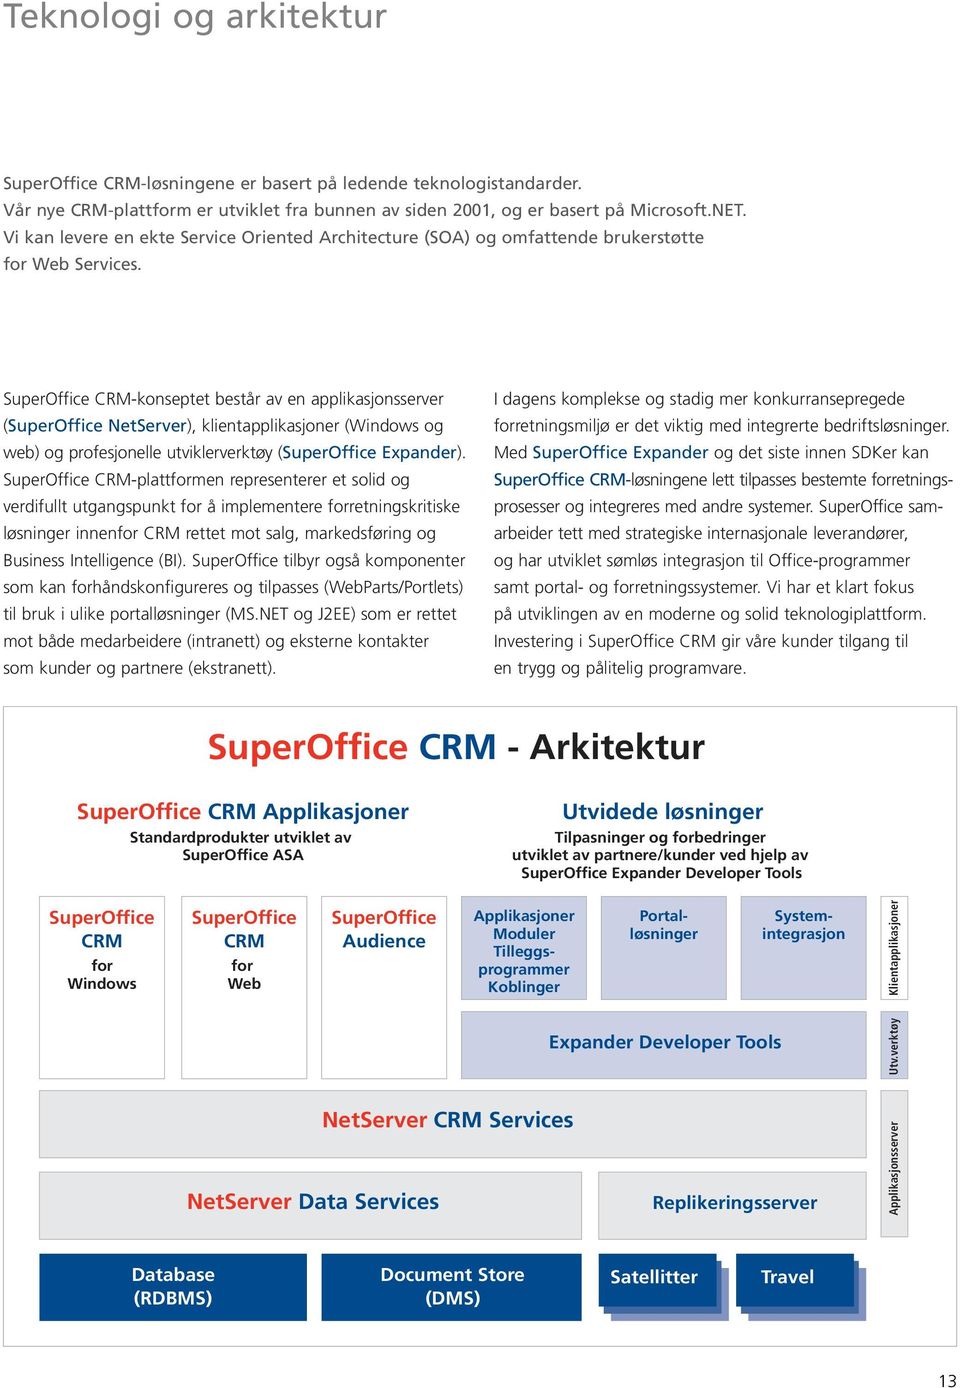 SuperOffice CRM-konseptet består av en applikasjonsserver (SuperOffice NetServer), klientapplikasjoner (Windows og web) og profesjonelle utviklerverktøy (SuperOffice Expander).